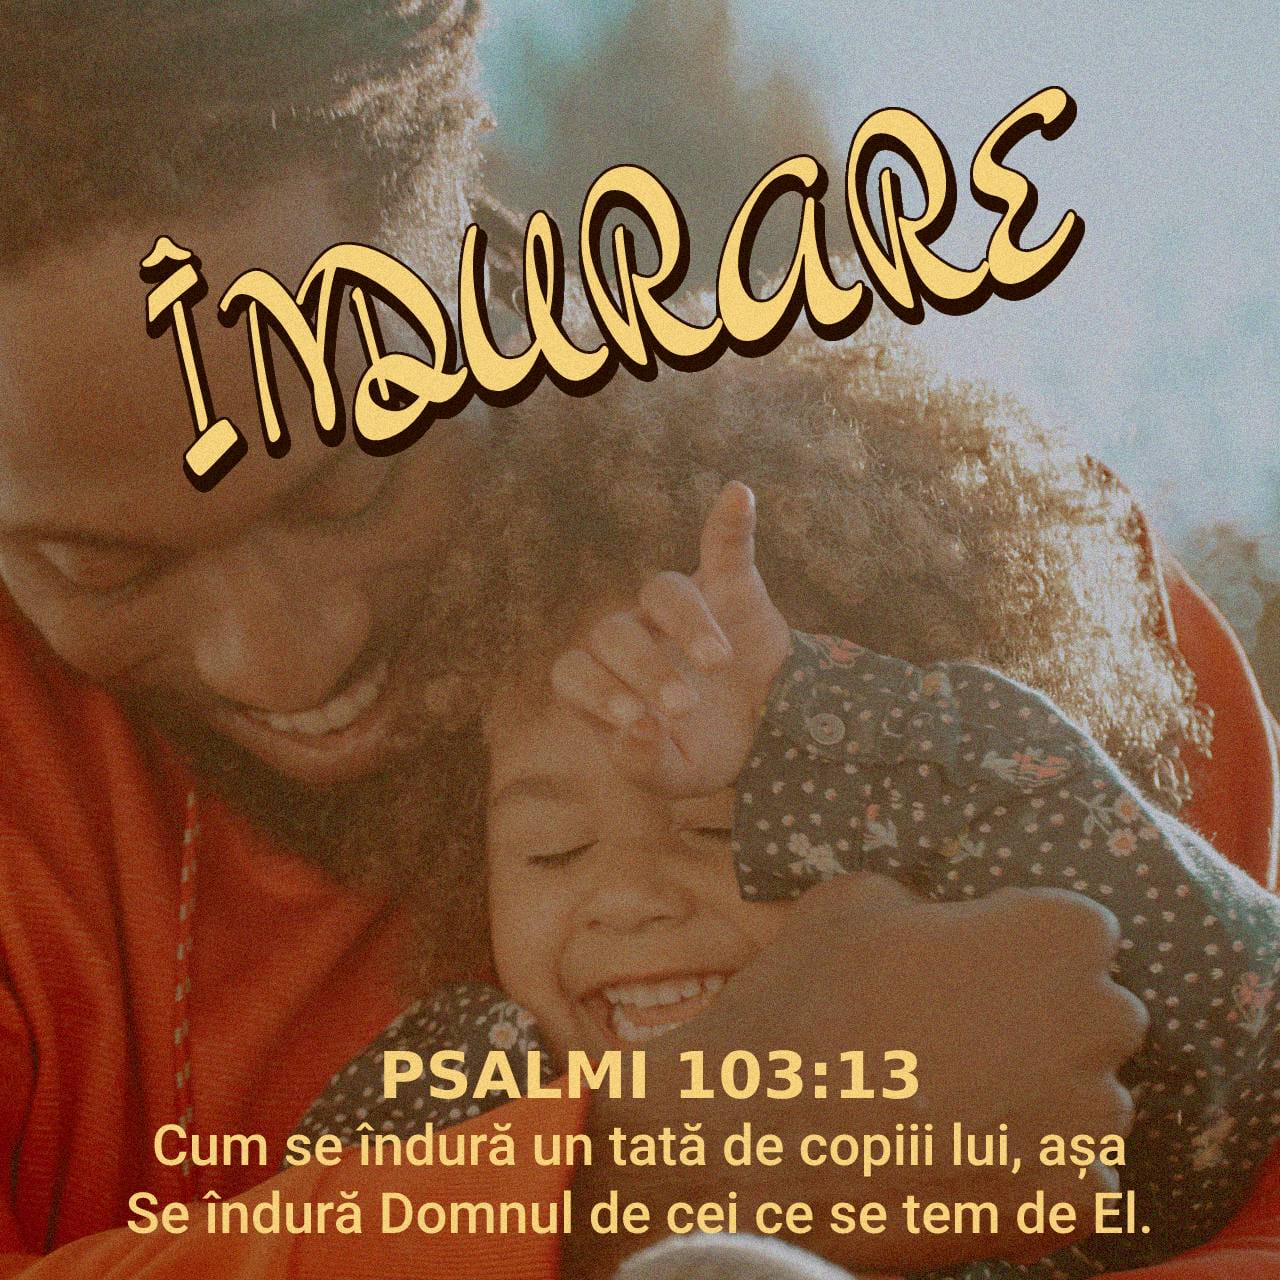 Precum un tată are milă de copiii săi, tot așa are milă Domnul de cei ce se tem de El - Psalmi 103:13 - Verset ilustrat